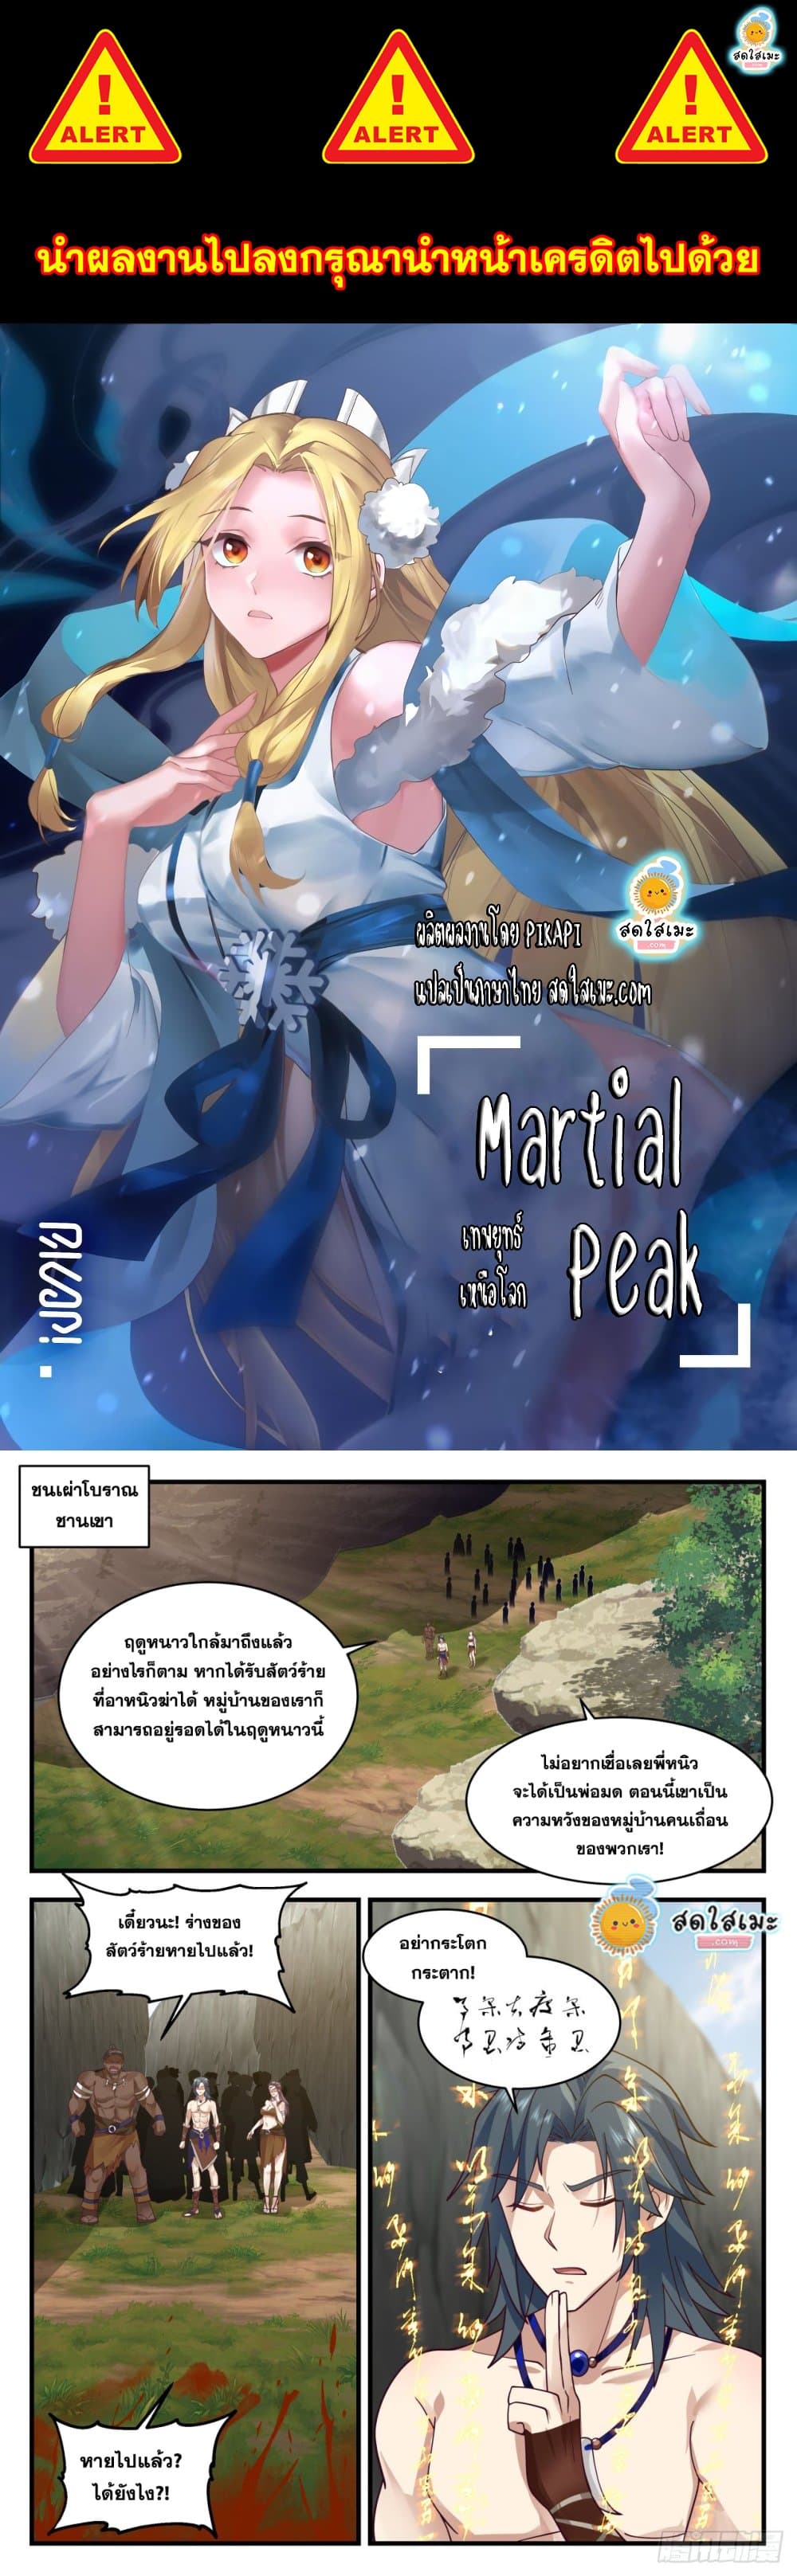 Martial Peak 2000 01